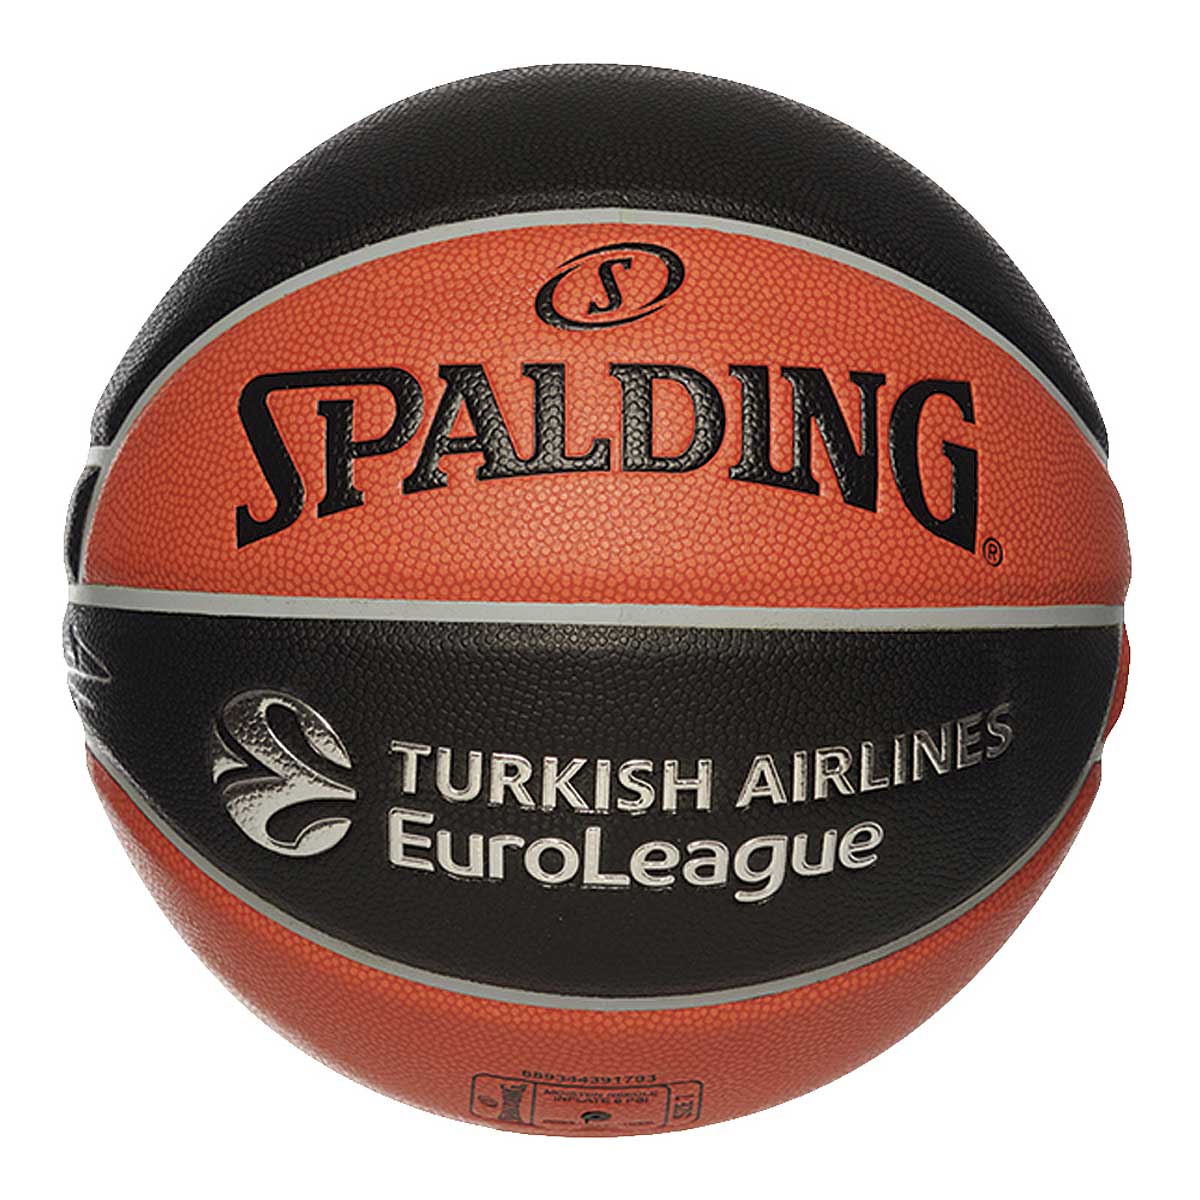 Kaufen Sie Legacy Euroleague Basketball für EUR 99.90 auf KICKZ!